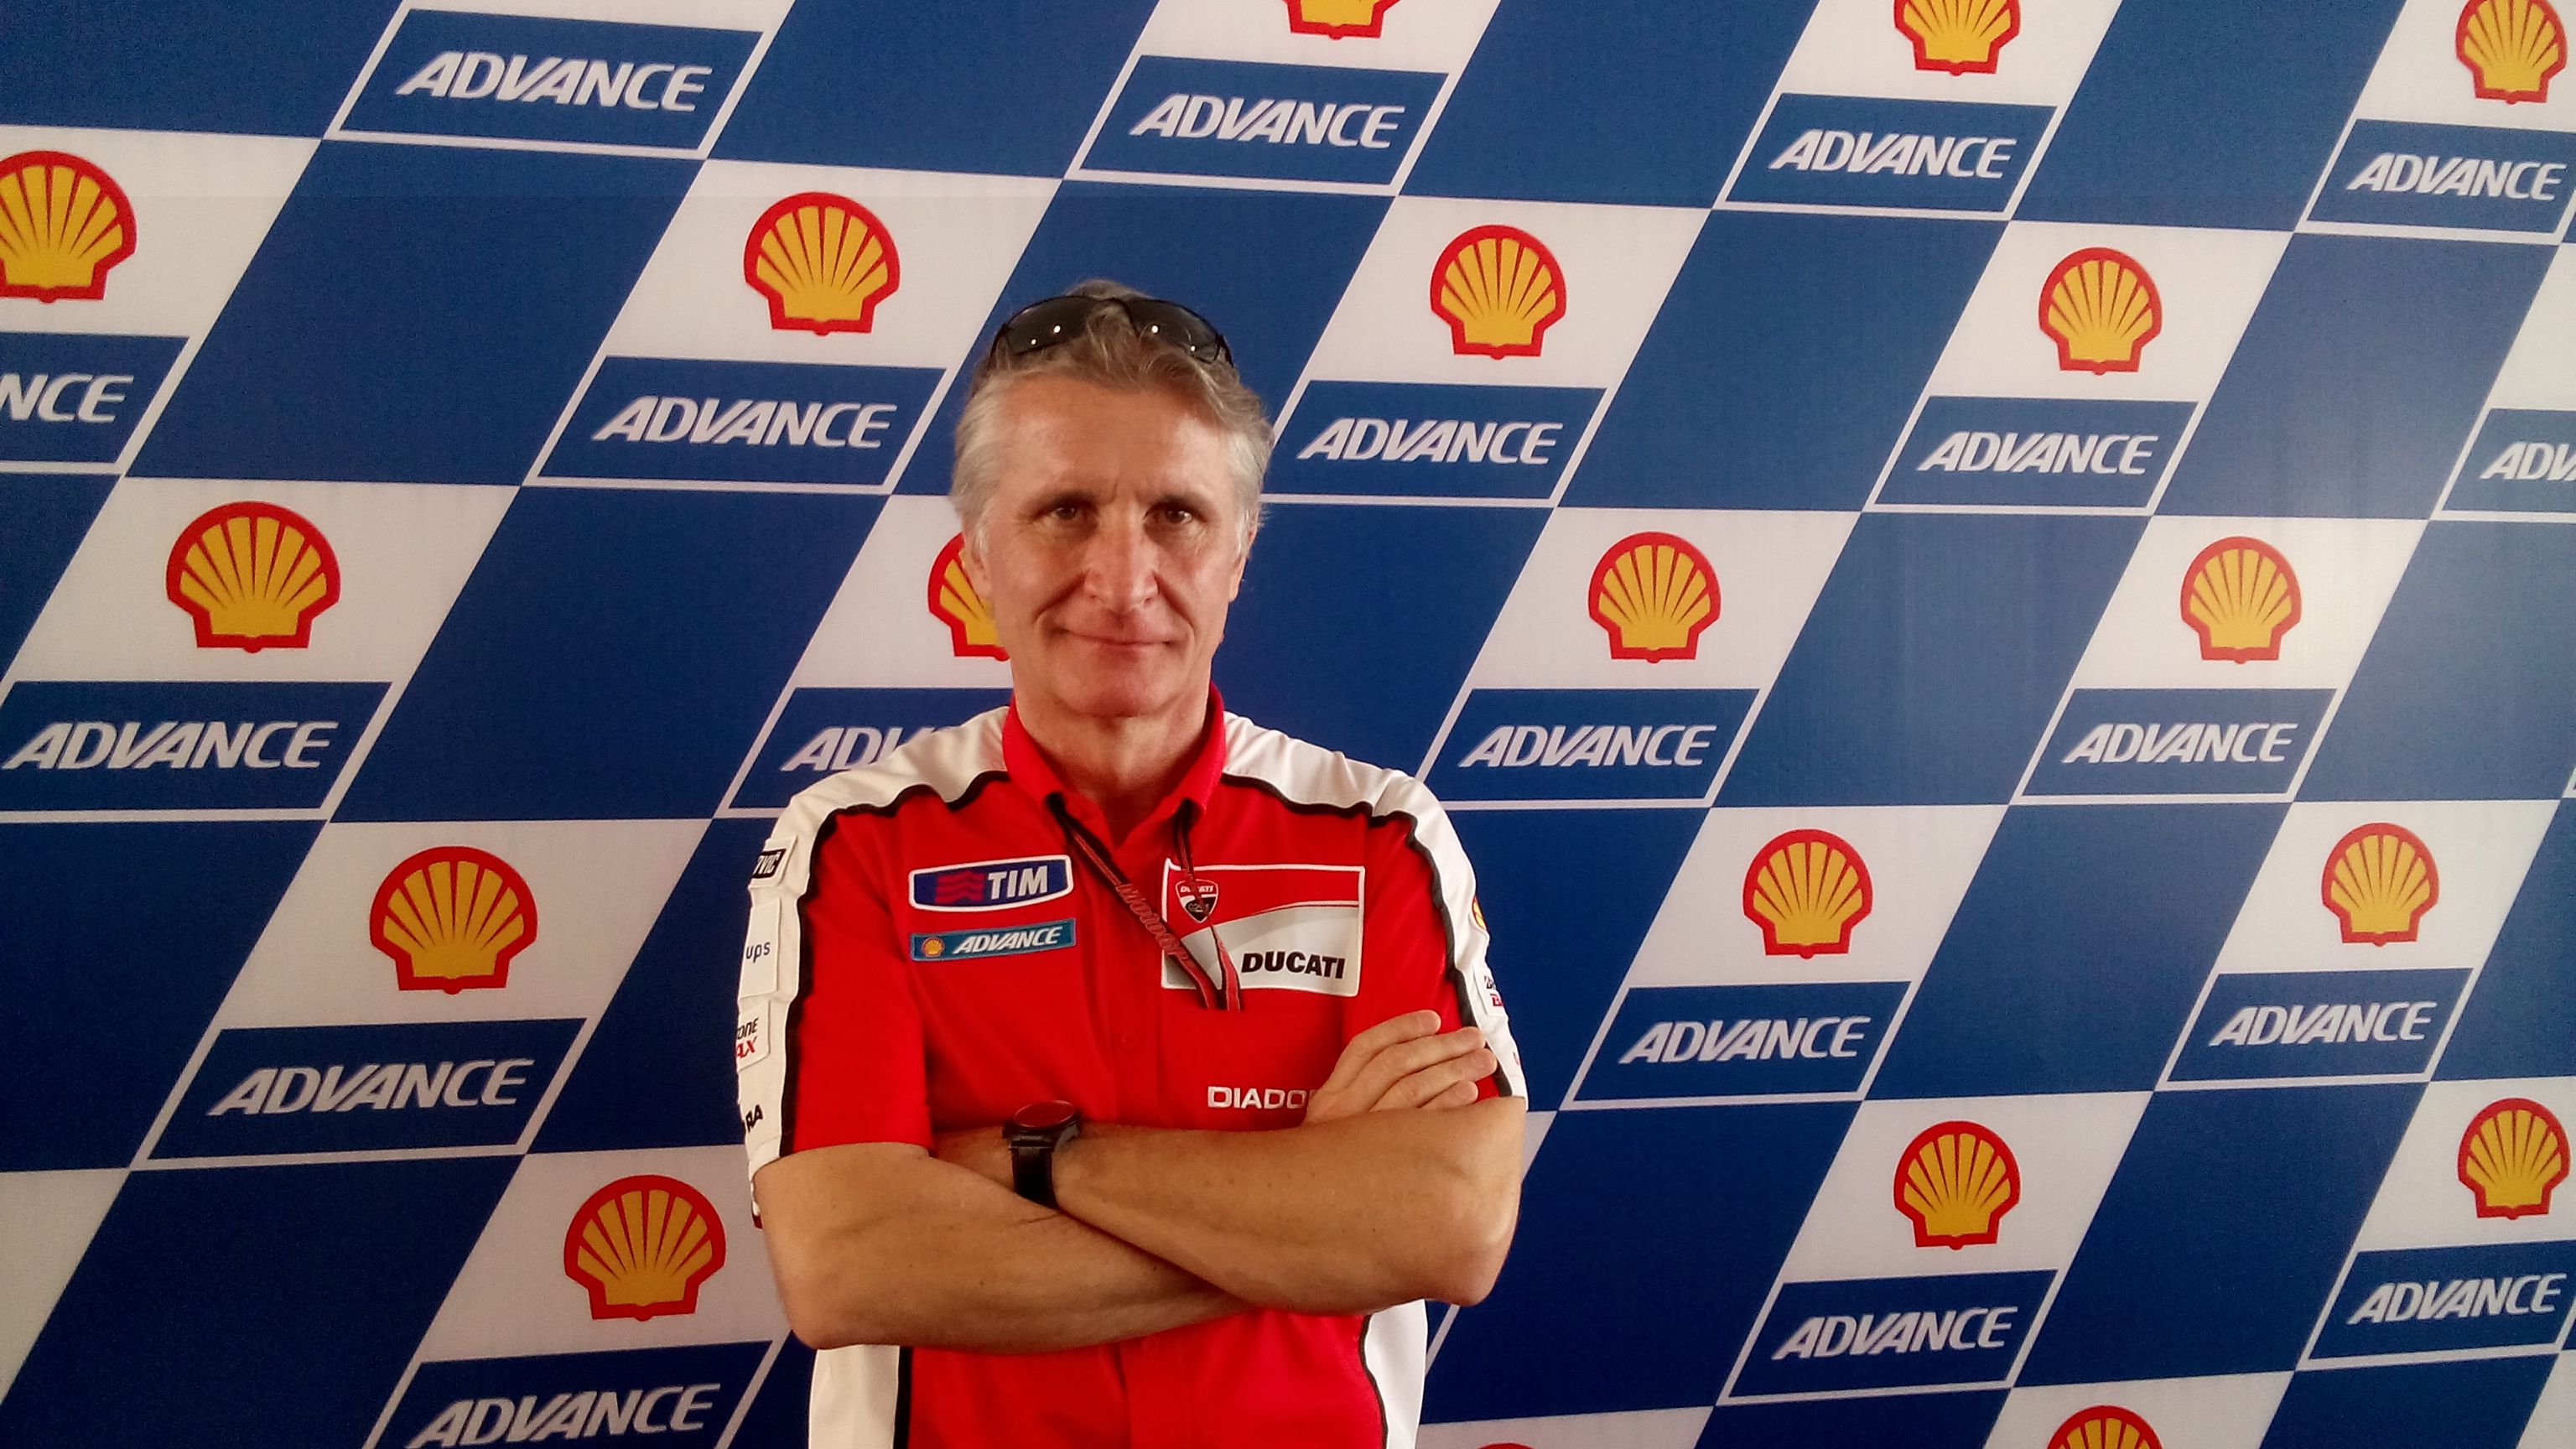 Direktur Sport Ducati, Paolo Ciabatti, menyarankan Andrea Dovizioso untuk bertahan di Tim Mission Winnow Ducati musim depan. Tampak Ciabatti ketika menghadiri balapan GP Malaysia di Sirkuit Sepang, Malaysia, 25 Oktober 2014.